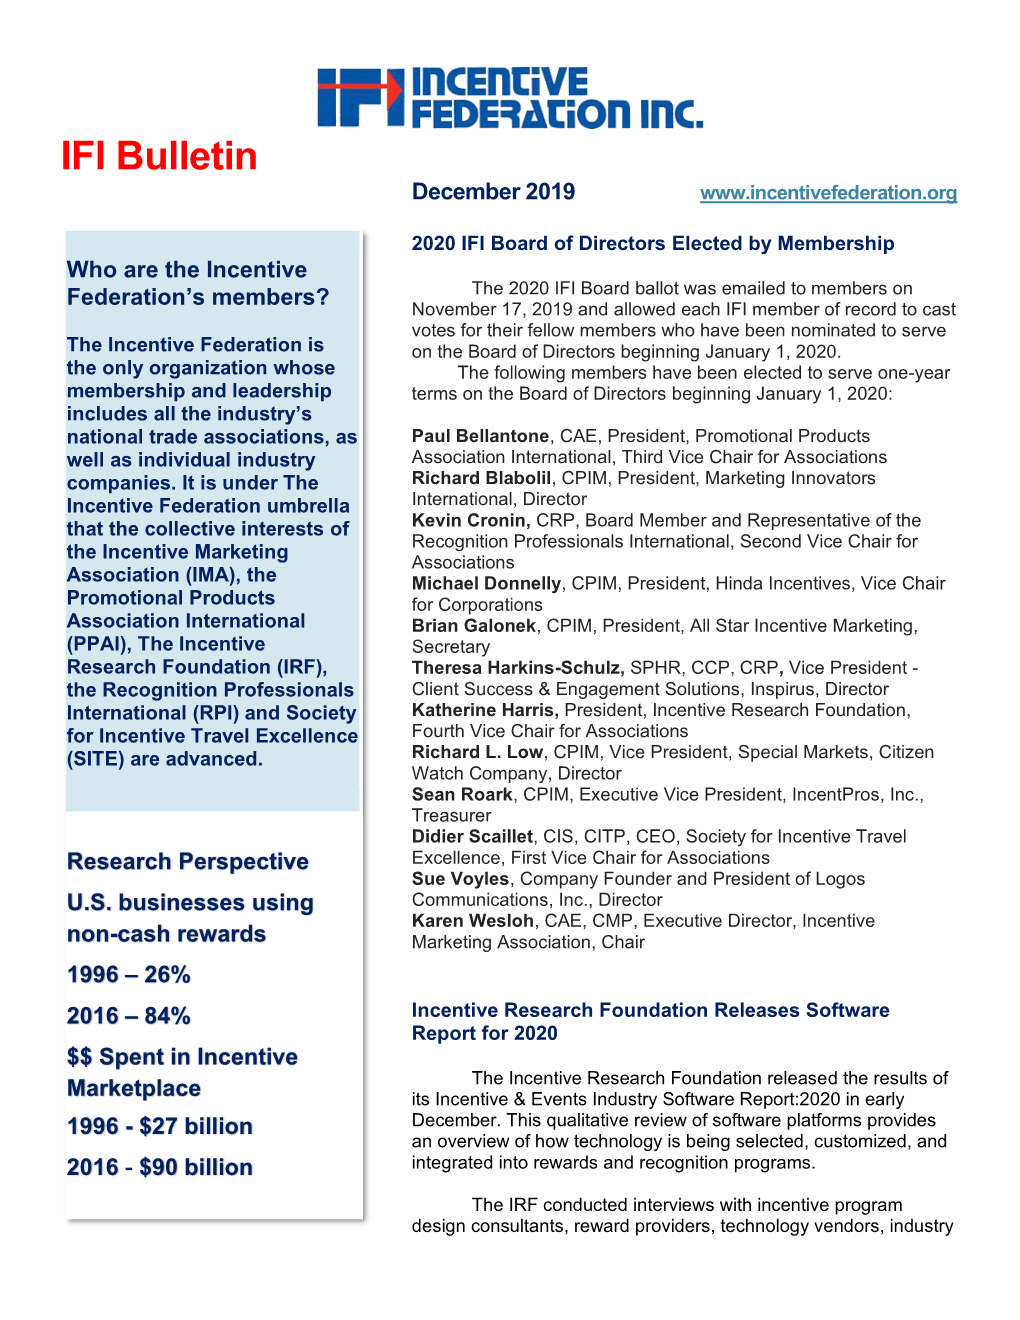 IFI Bulletin December 2019